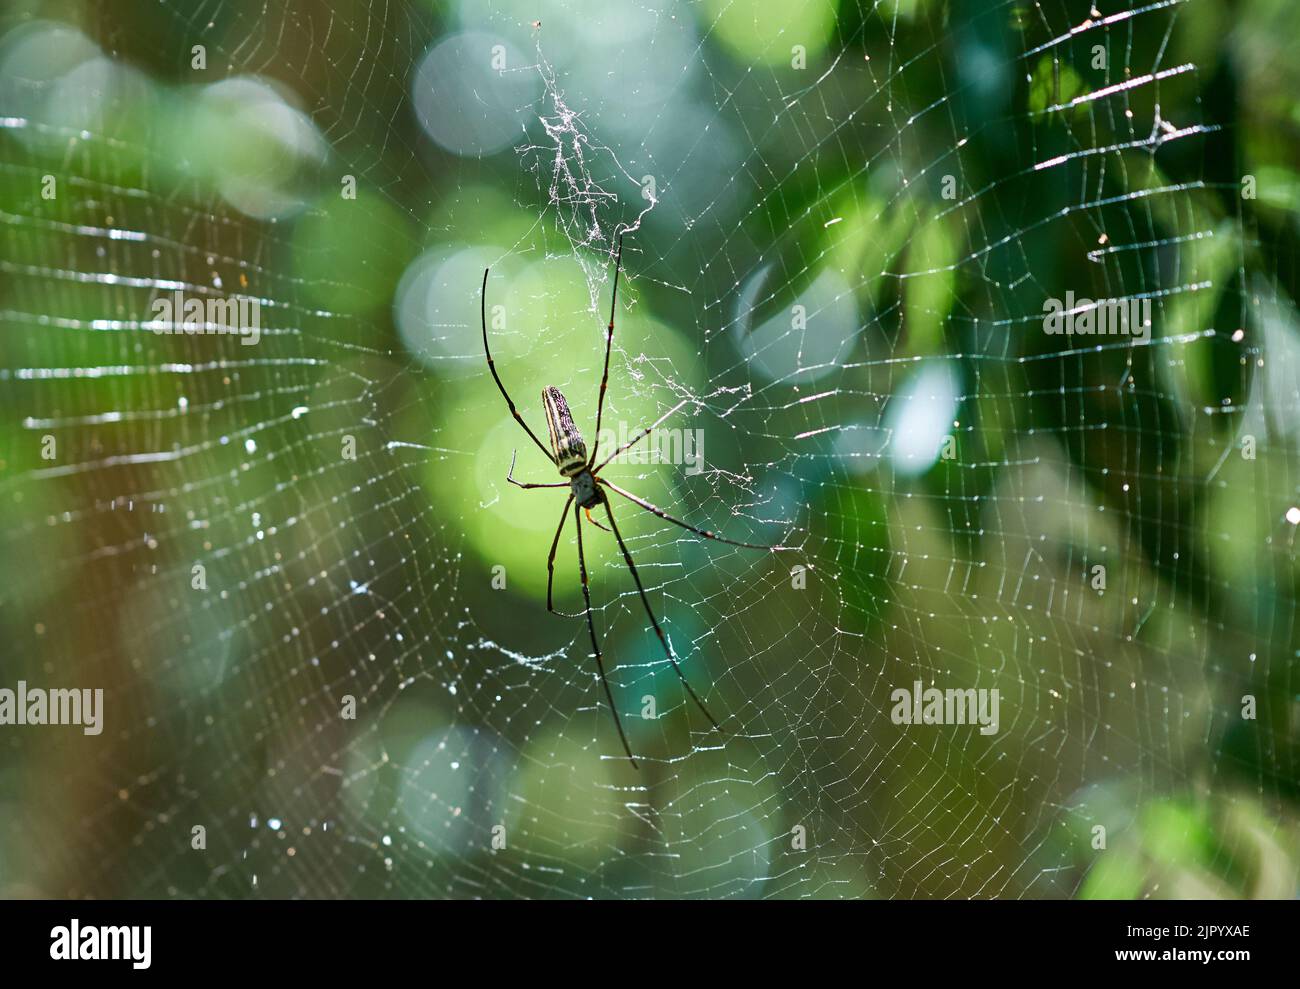 Eine große Spinne in einem Netz in einem grünen Wald, in Abendsonne. Stockfoto